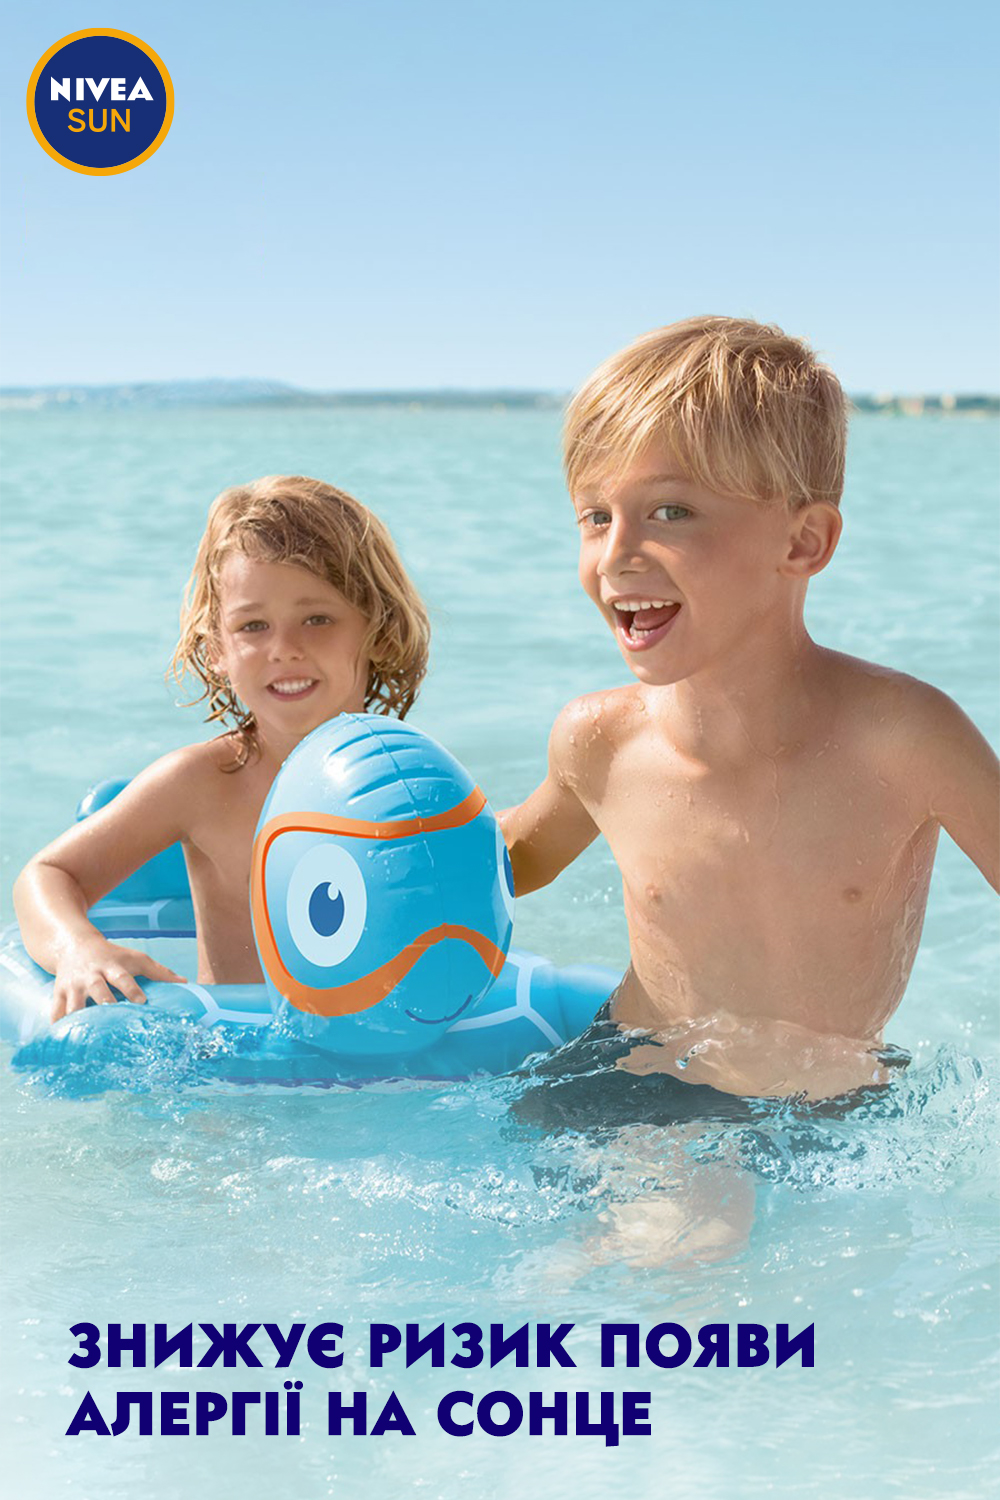 Лосьон детский увлажняющий солнцезащитный Nivea Sun Играй и купайся, SPF 50+, 200 мл - фото 8